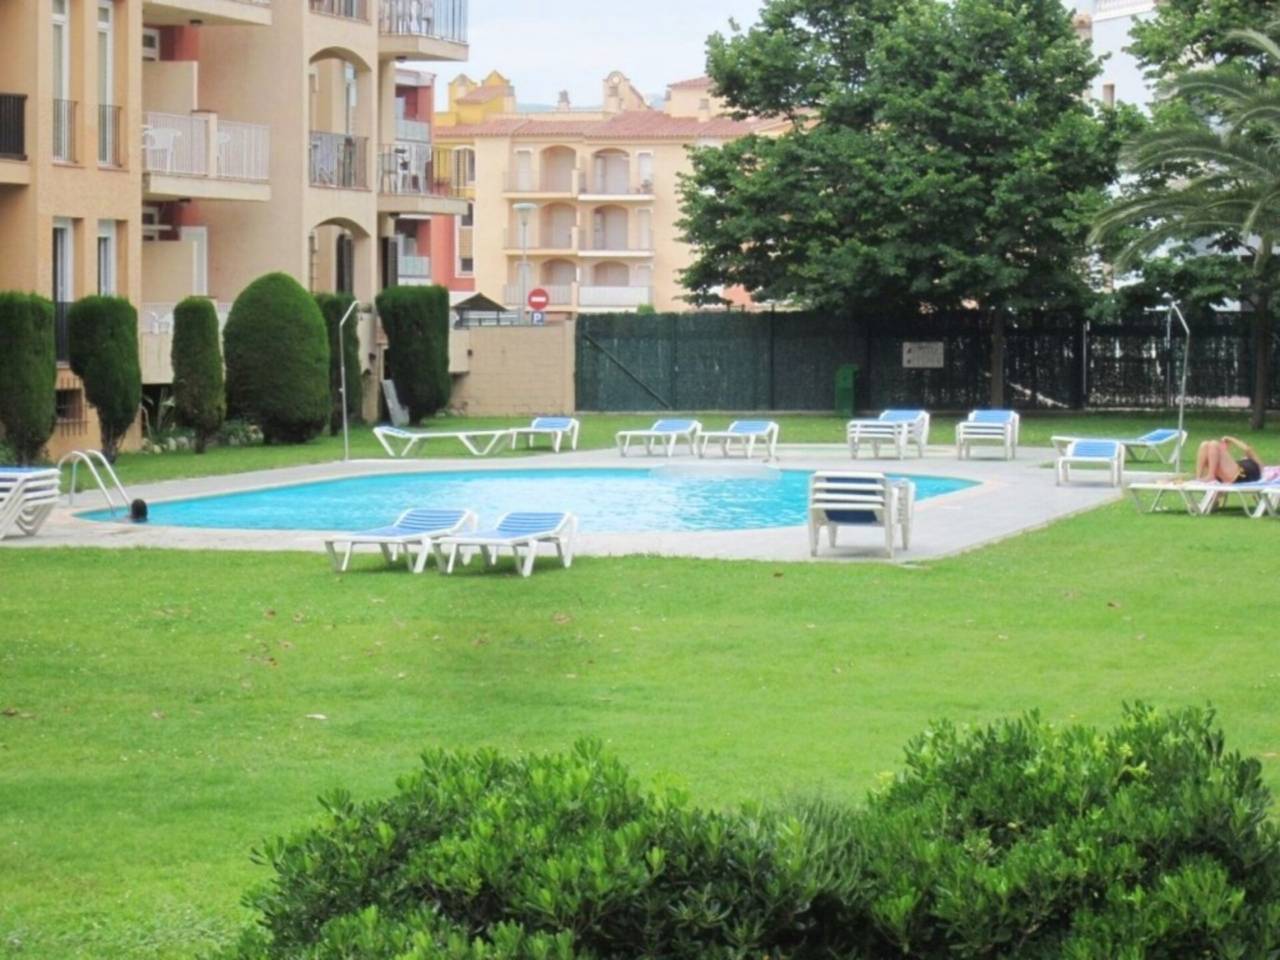 061144 - MIMOSES Apartamento planta baja en construcción con jardines y piscinas comunitarias 